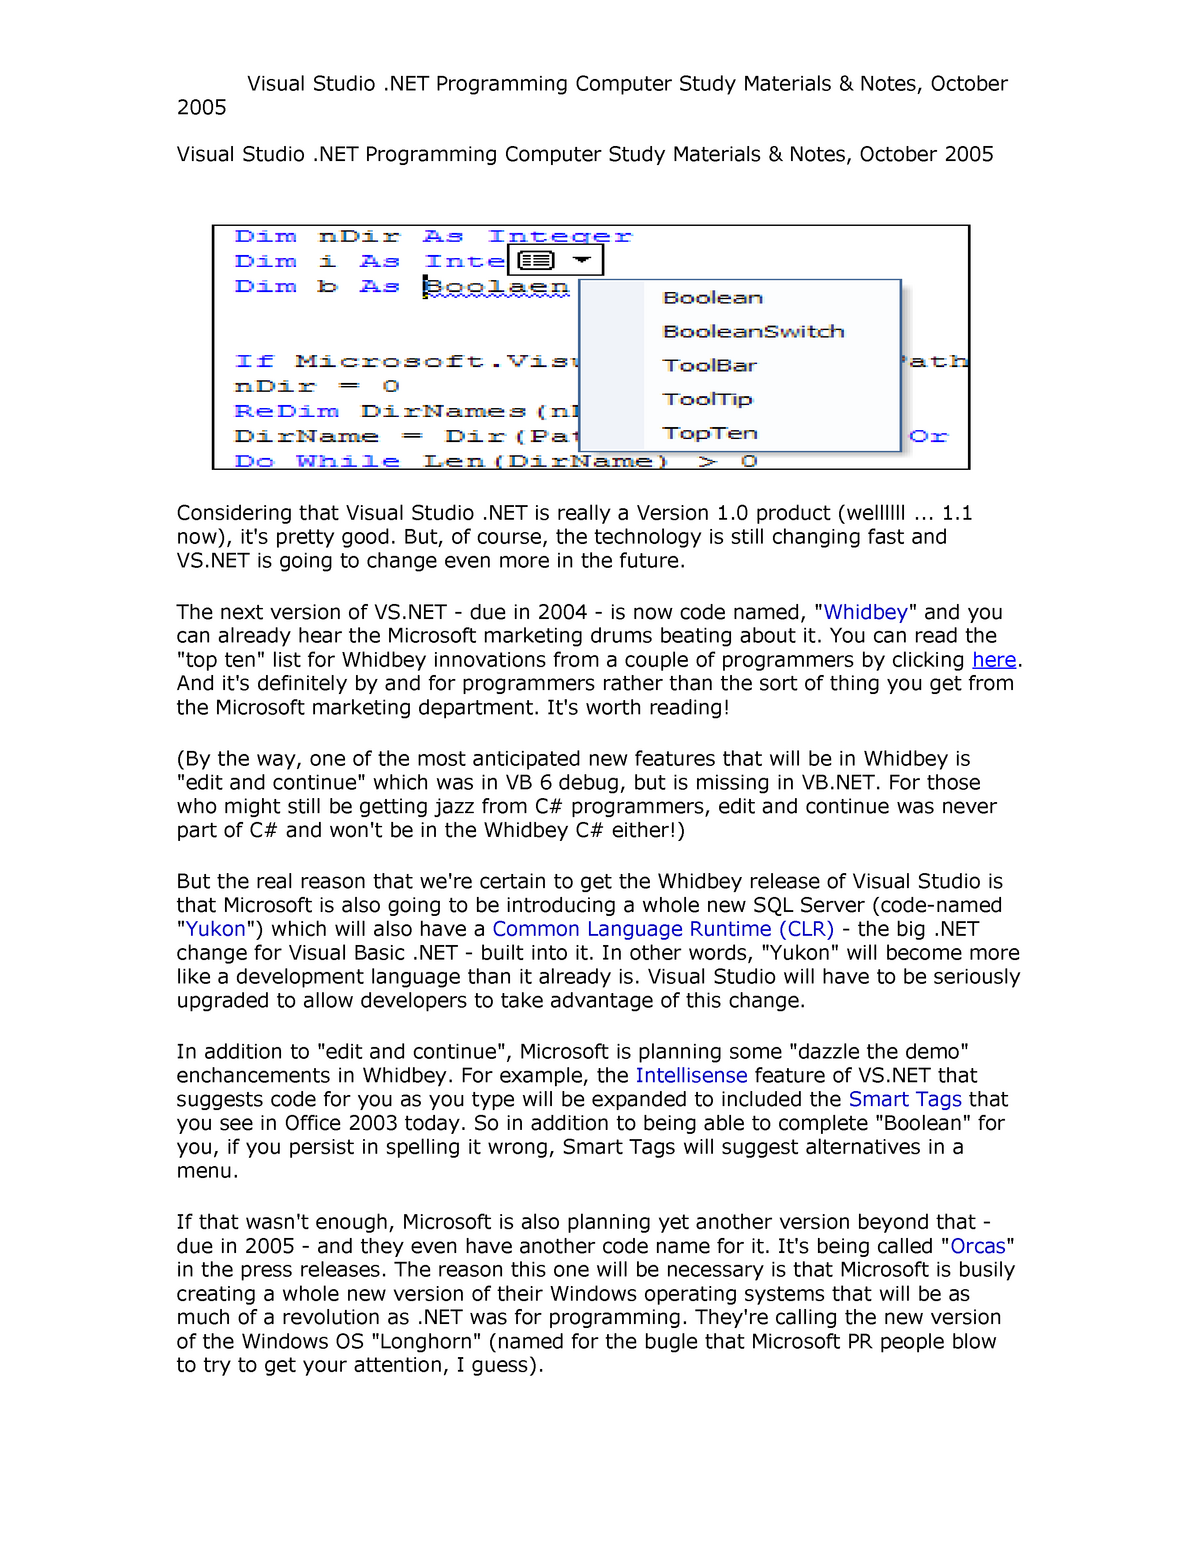 Visual Studio .NET Programming Computer Study Materials  Notes, October  2005 - 2005 Visual Studio - StuDocu